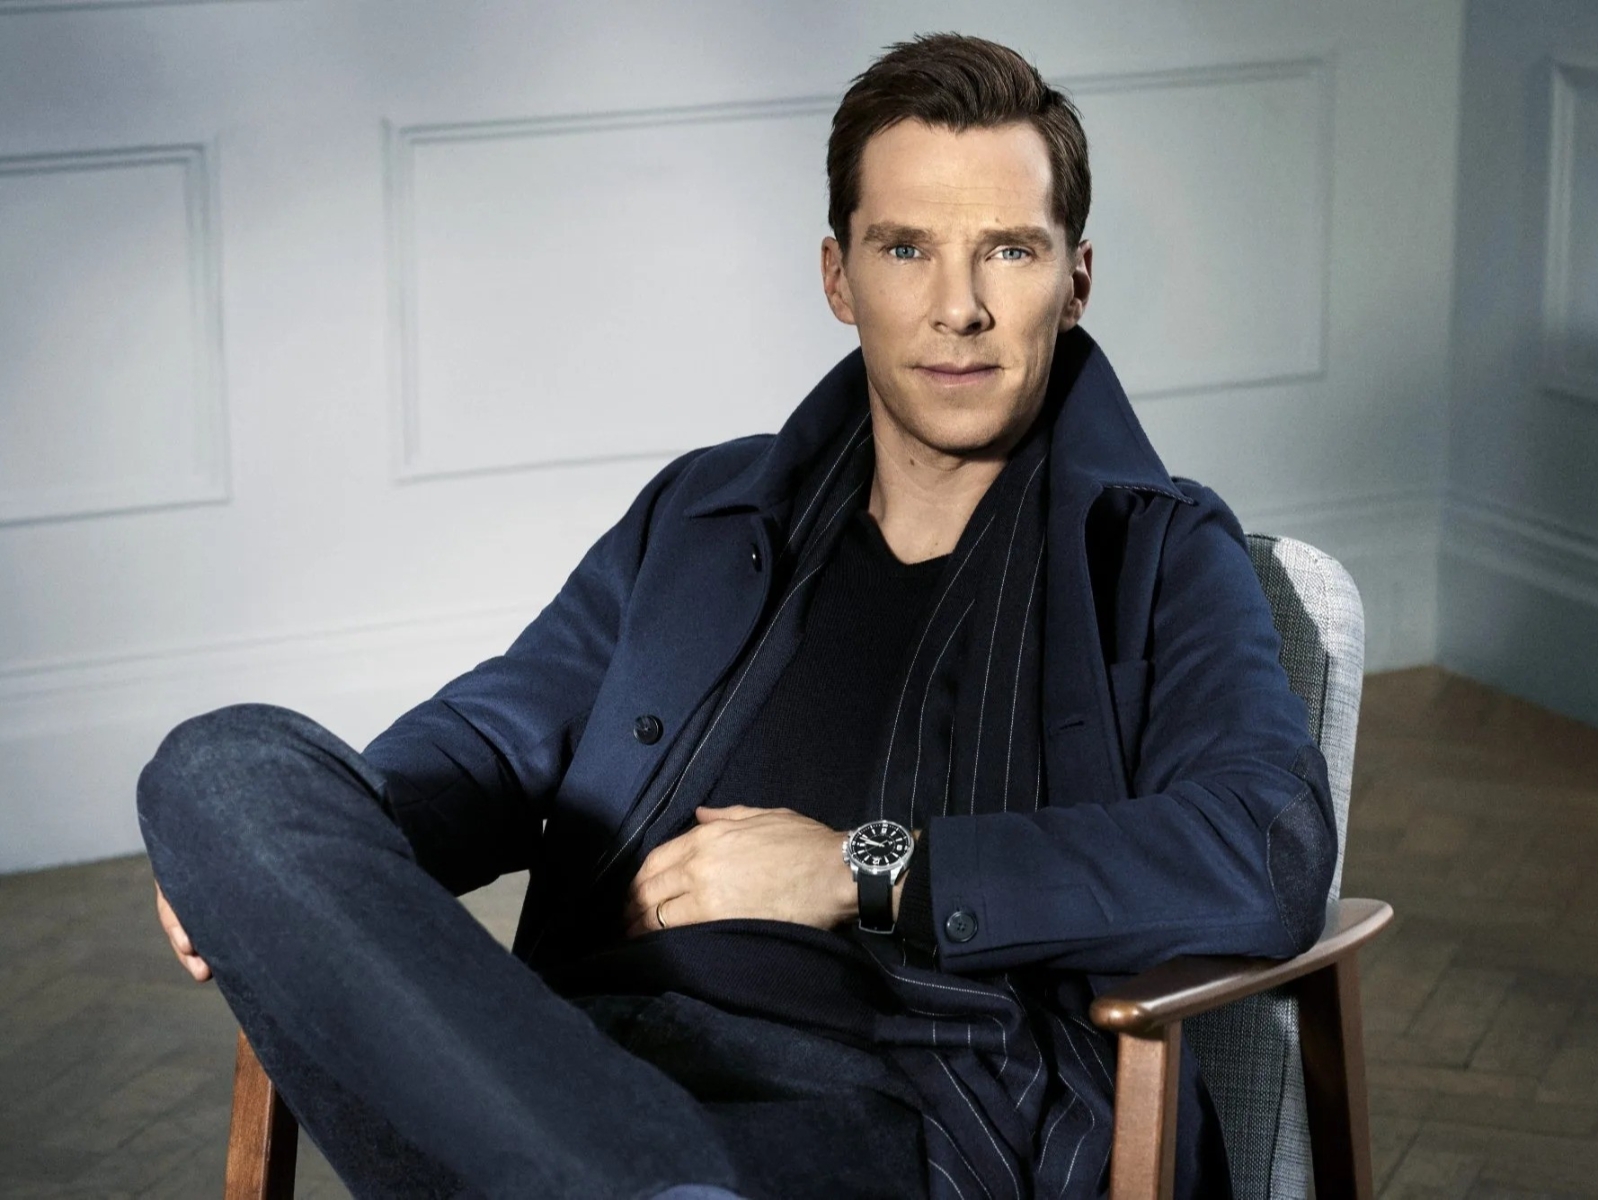 演活福爾摩斯、入圍奧斯卡角色引爭議⋯關於「奇異博士」班奈狄克康柏拜區 Benedict Cumberbatch 的 7 件人生小故事